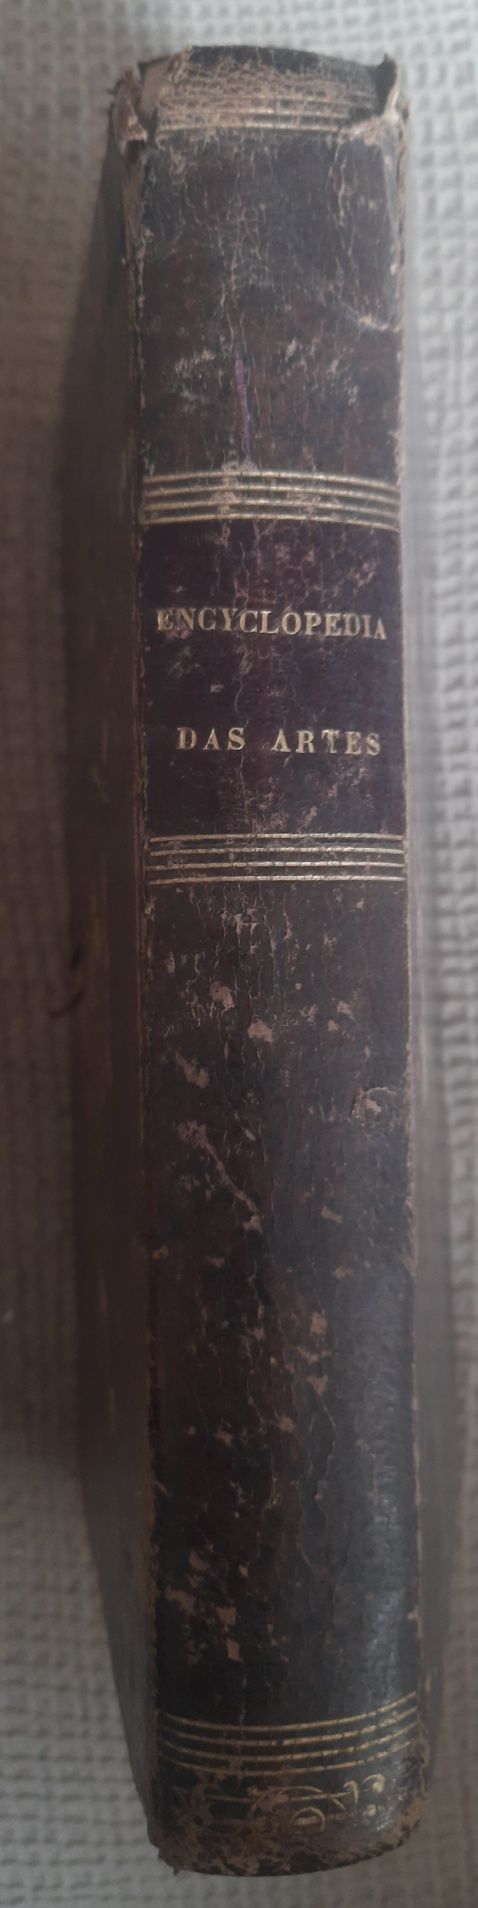 Livro encyclopedia das artes 1863